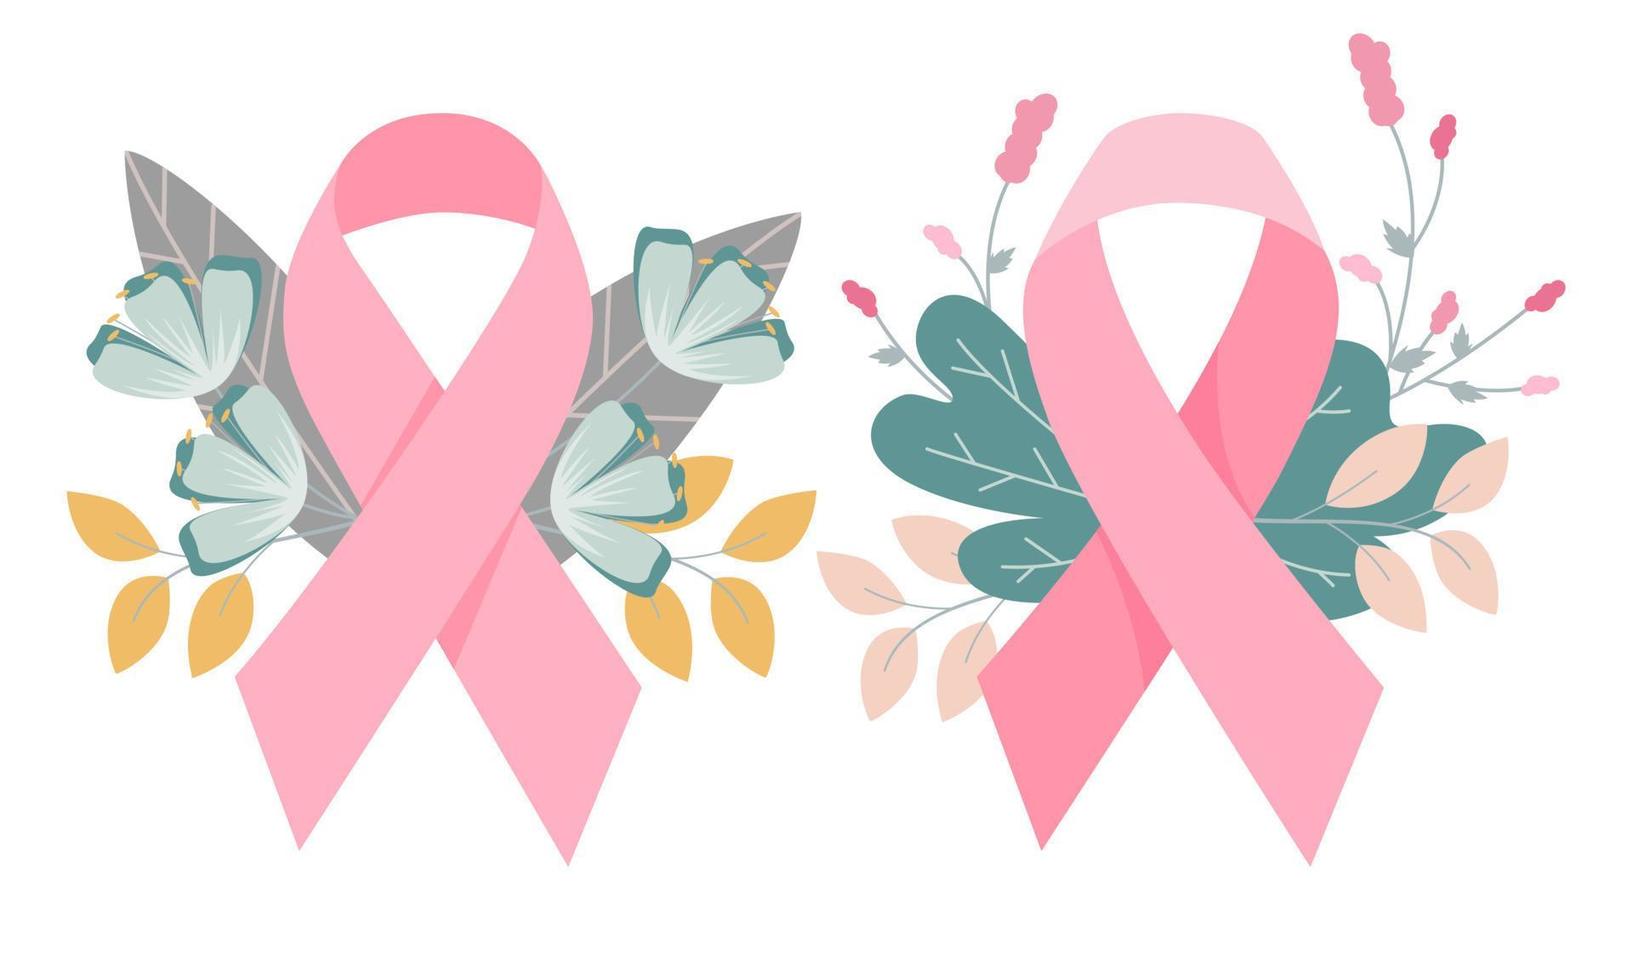 borst kanker linten en bloemen voor banier of poster, borst kanker dag concept. vlak vector symbolen.